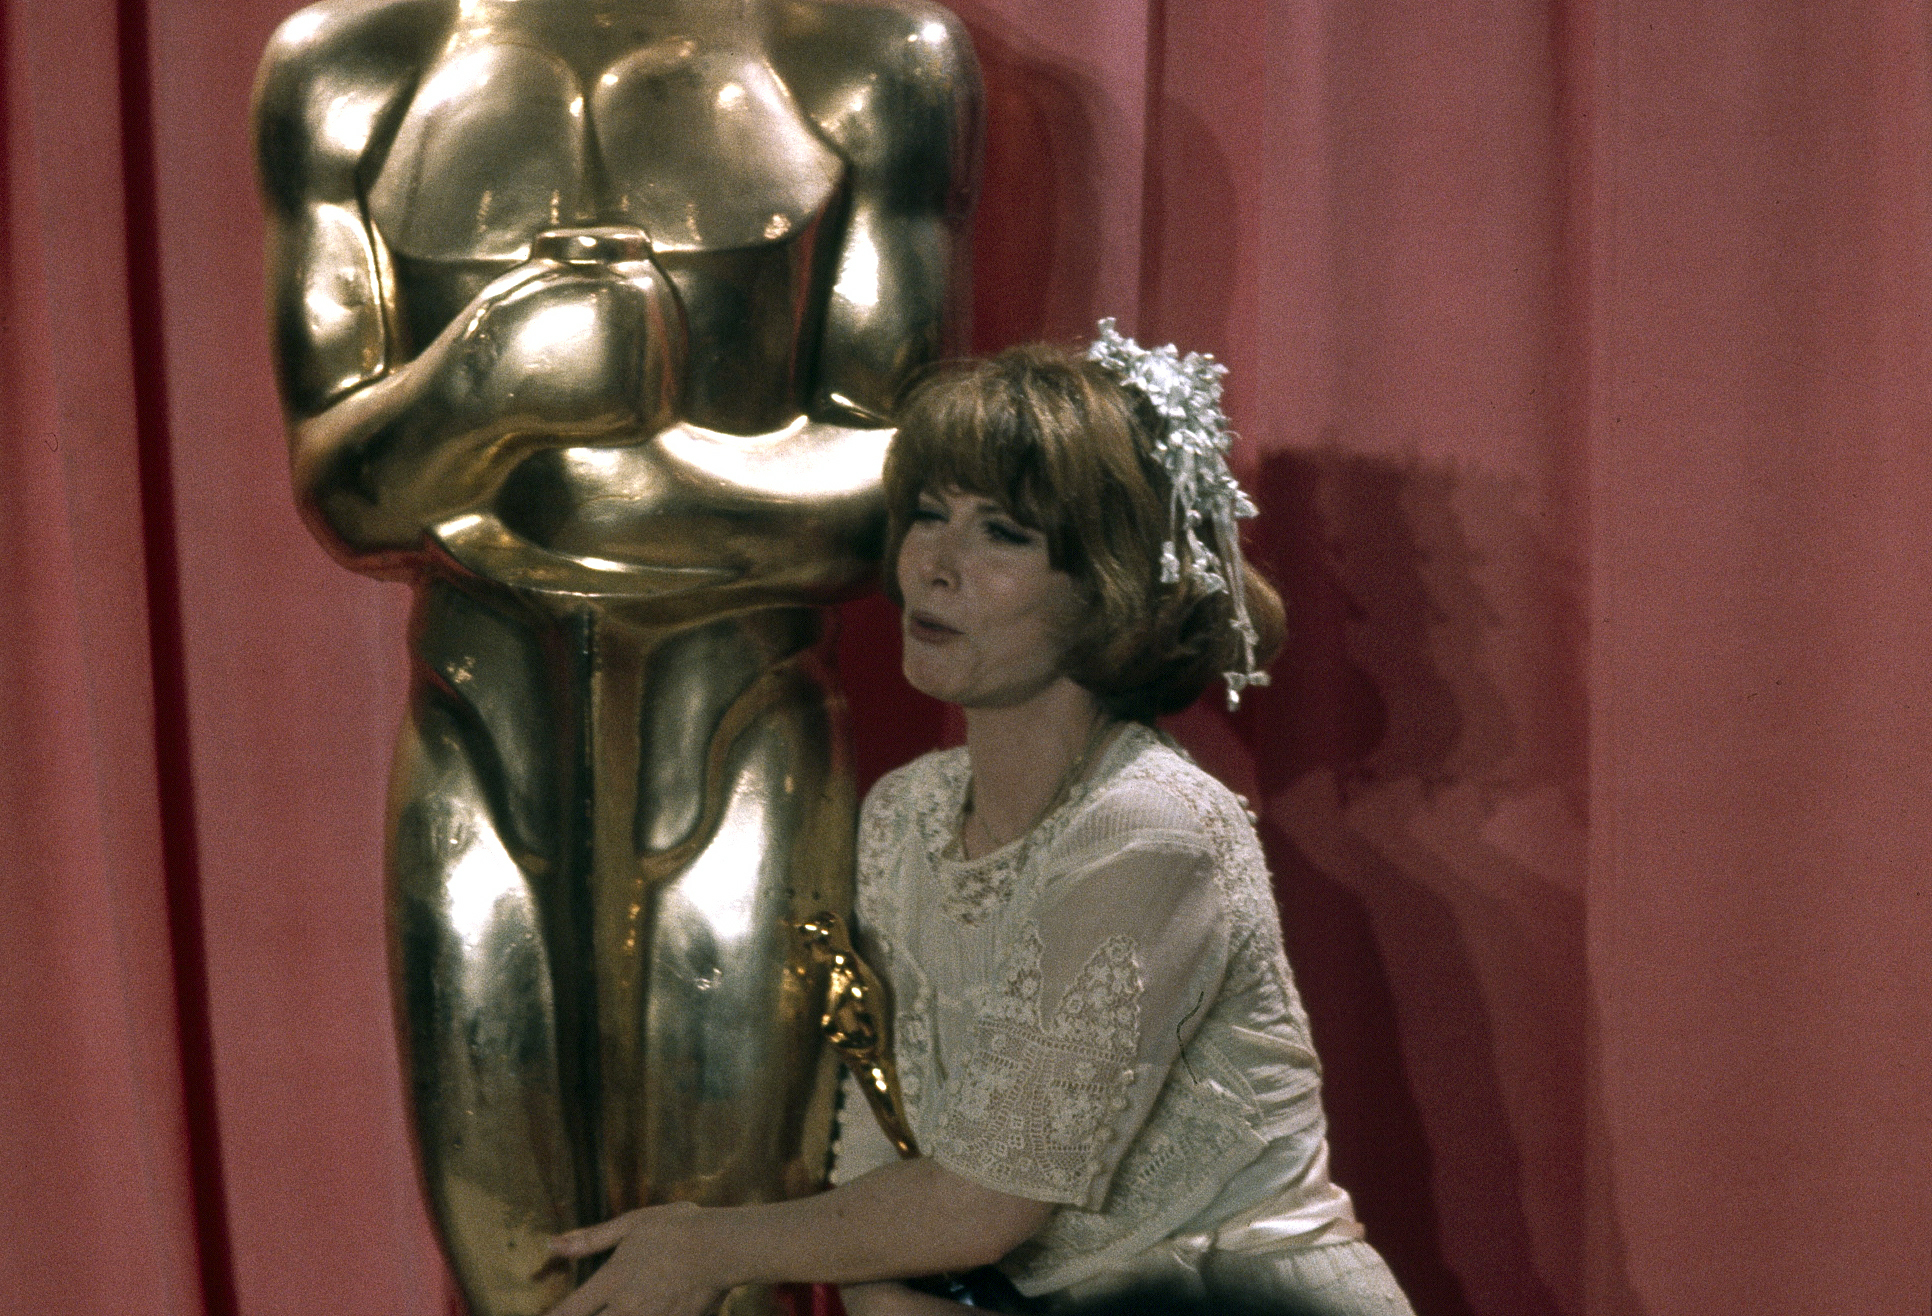 Screen legend dishes on Oscar, Emmys, Blacklist